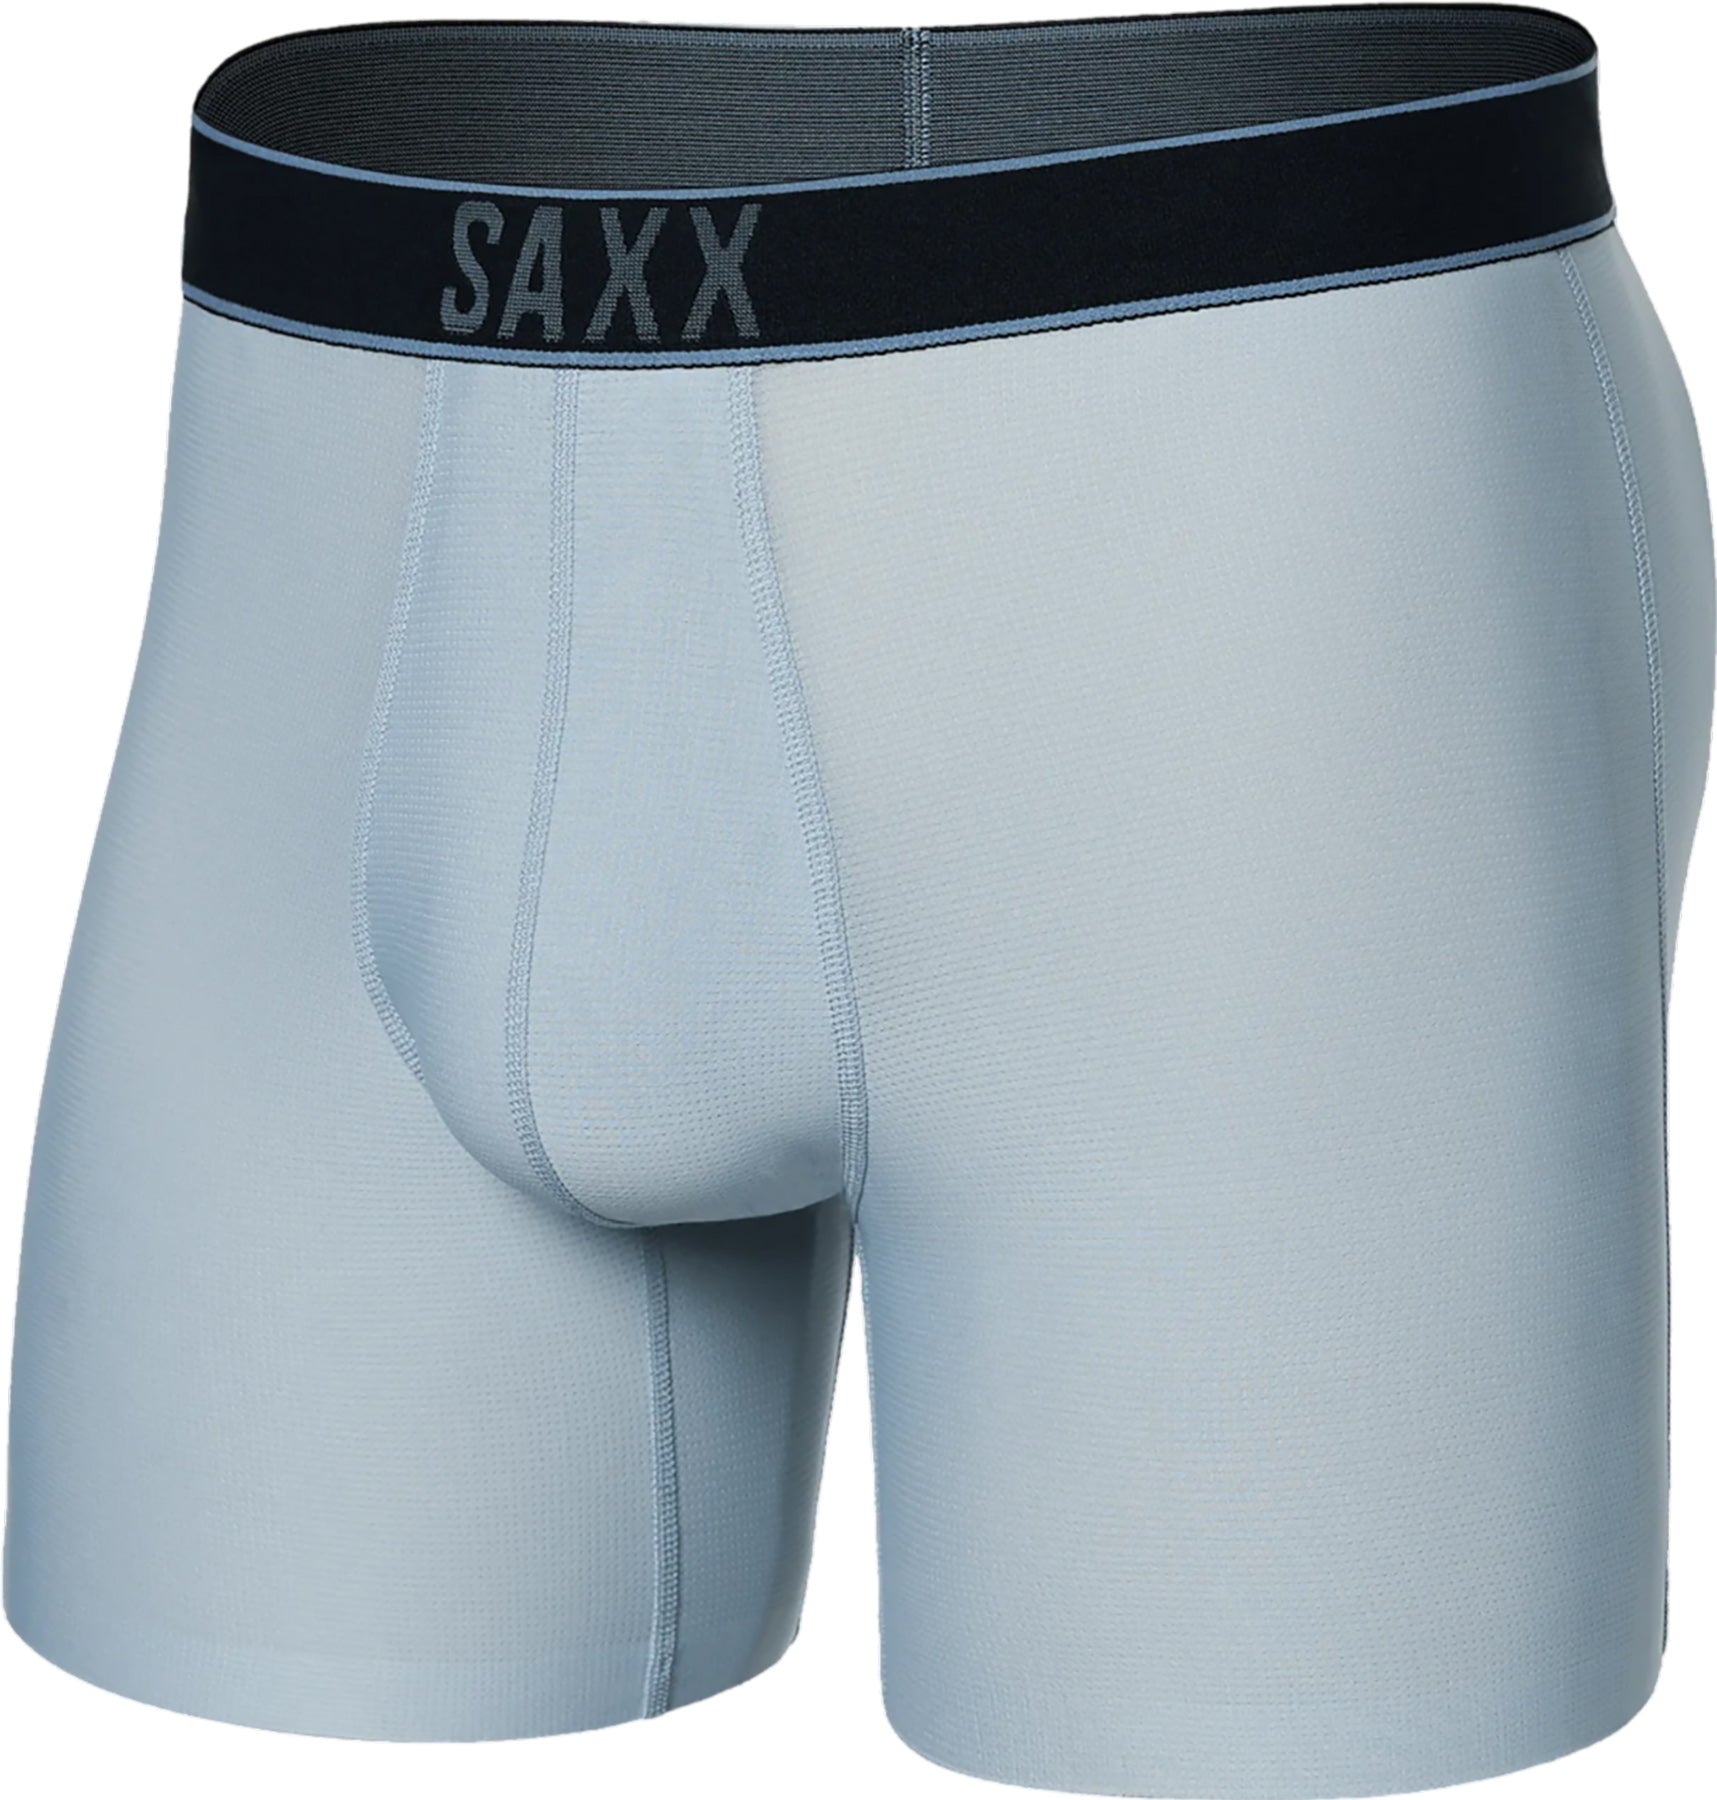 SAXX DropTemp Cooling Hydro Men's Aquatic Boxer Brief